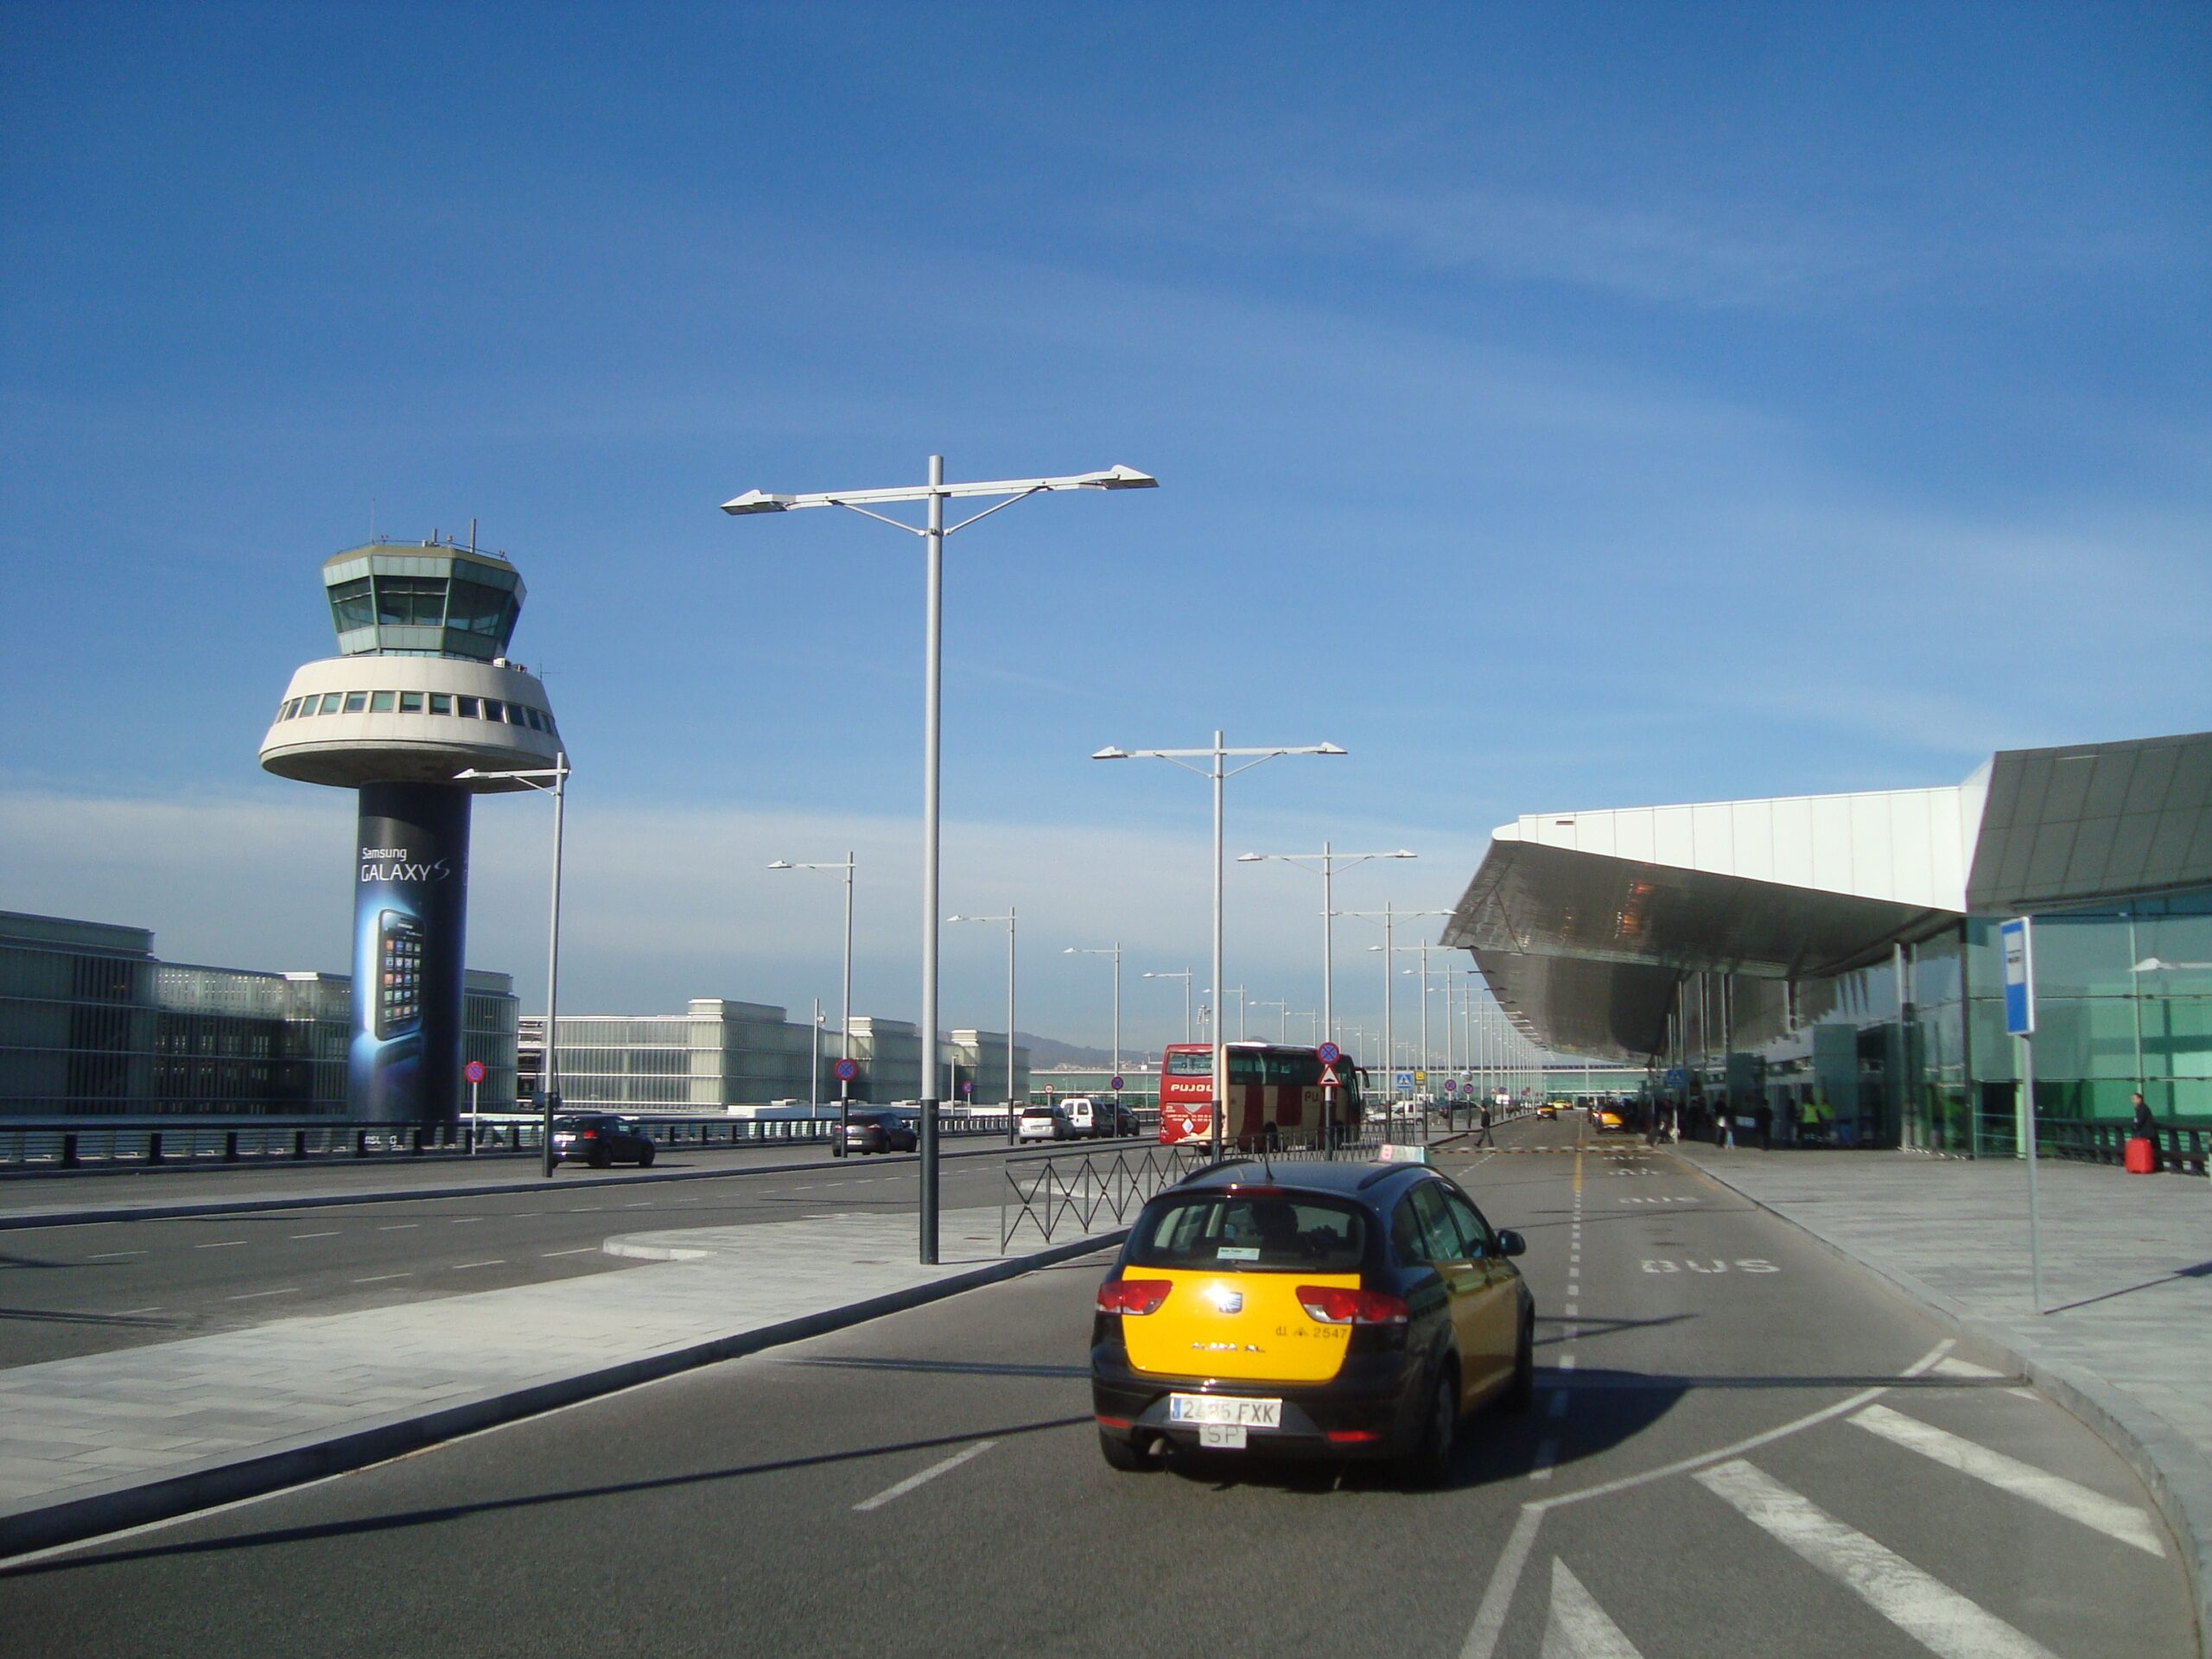 El aeropuerto de Barcelona